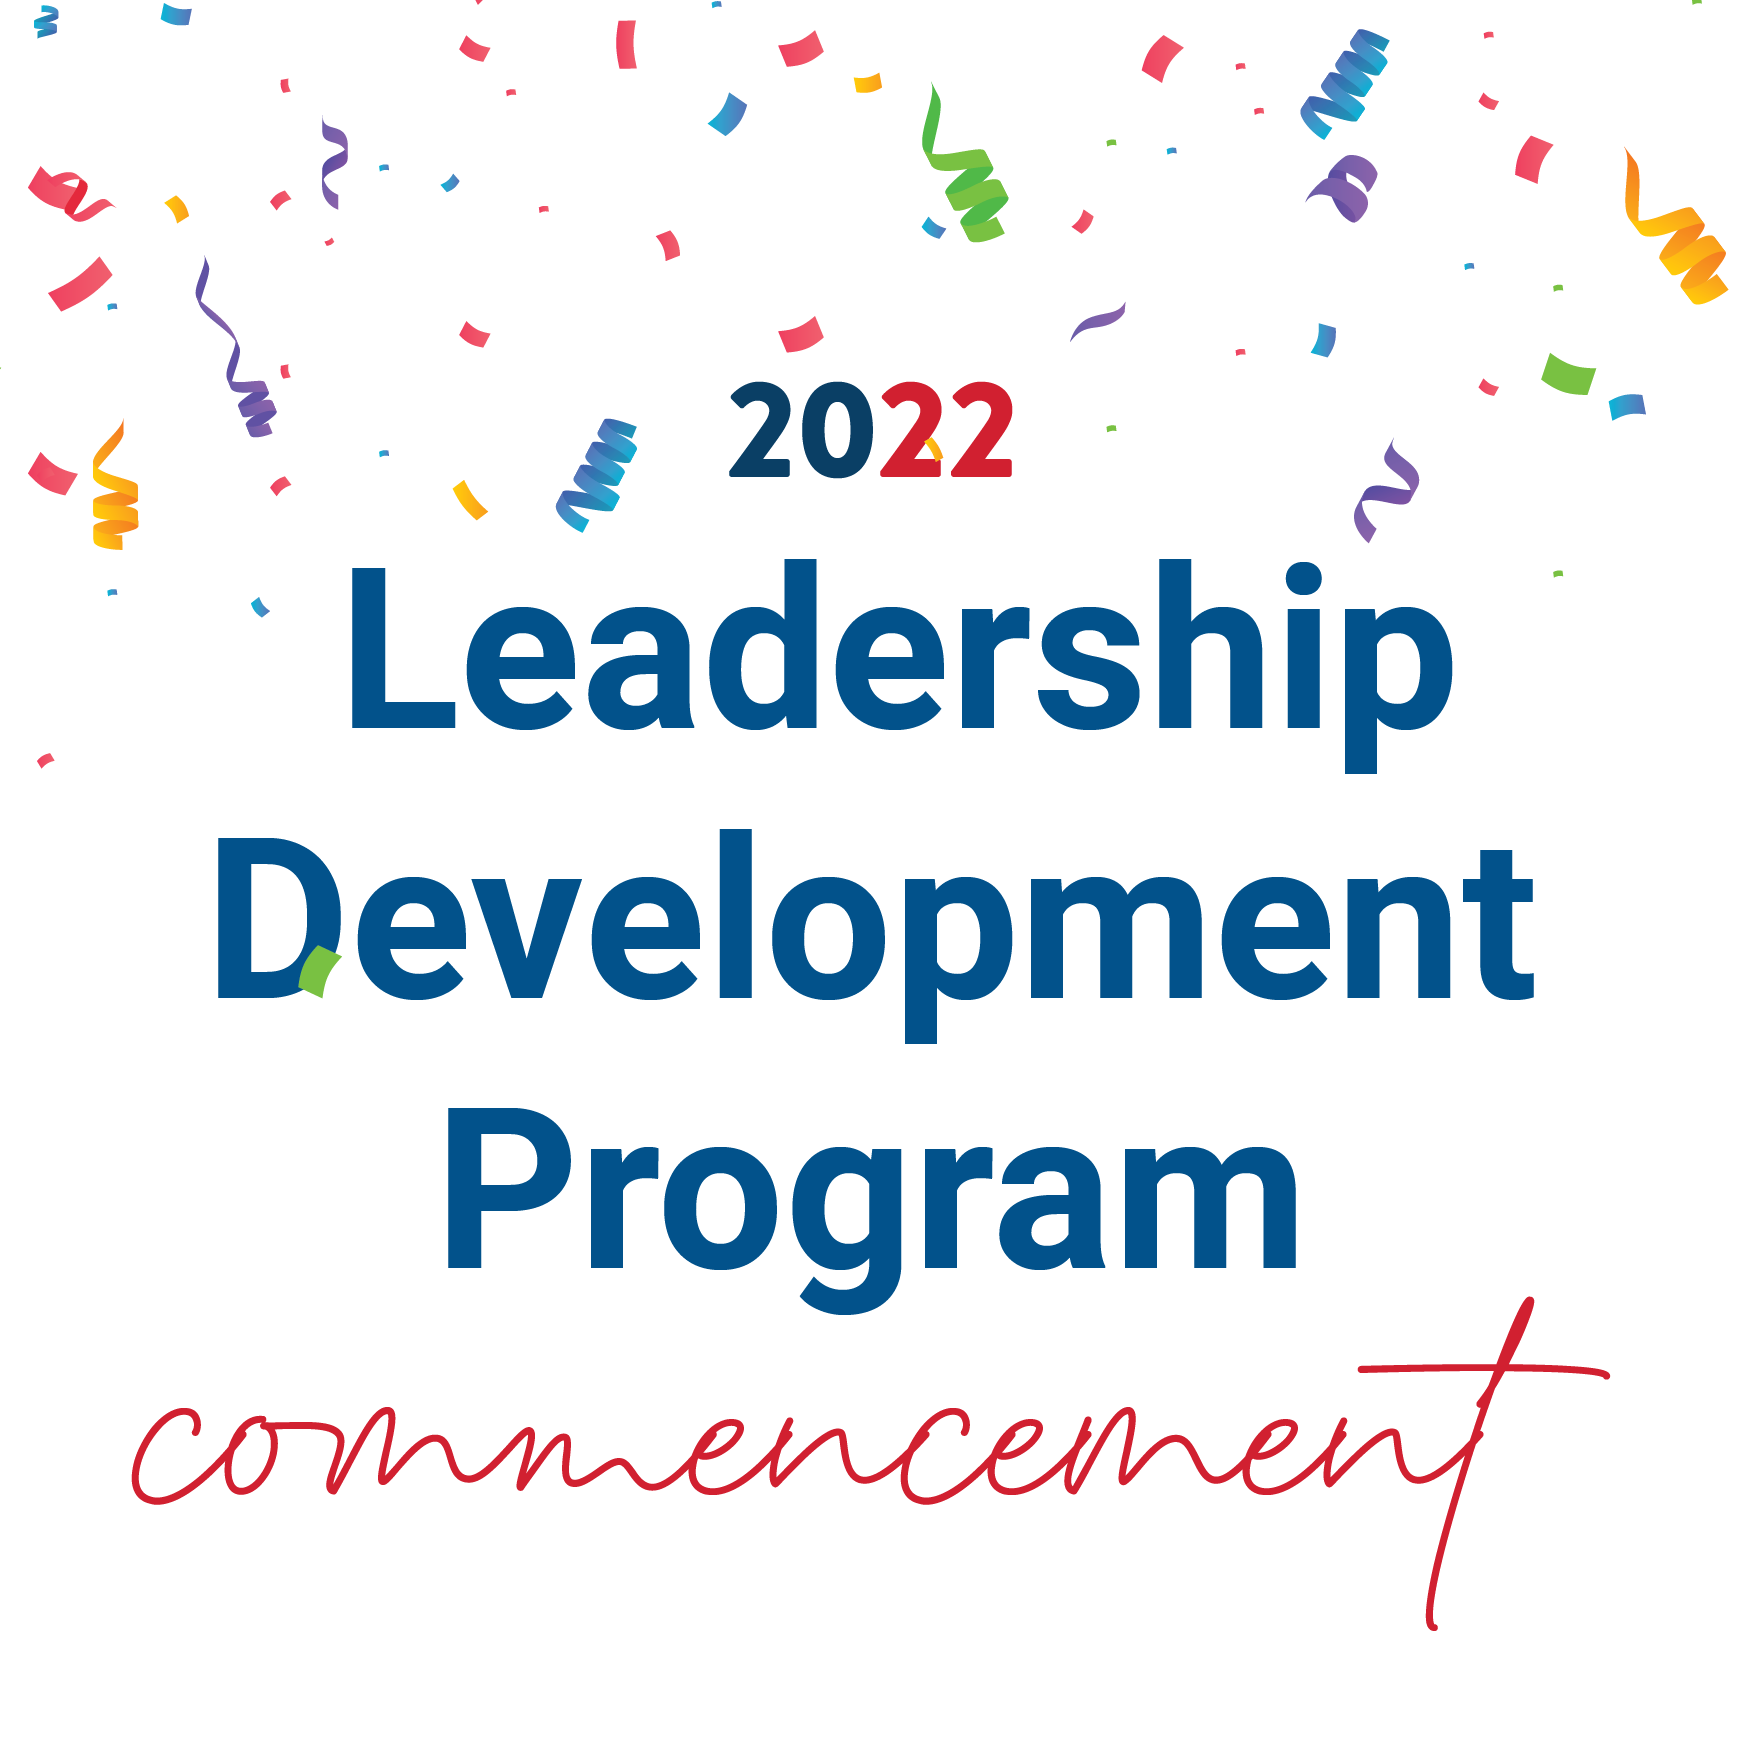 Leadership Development Program Commencement